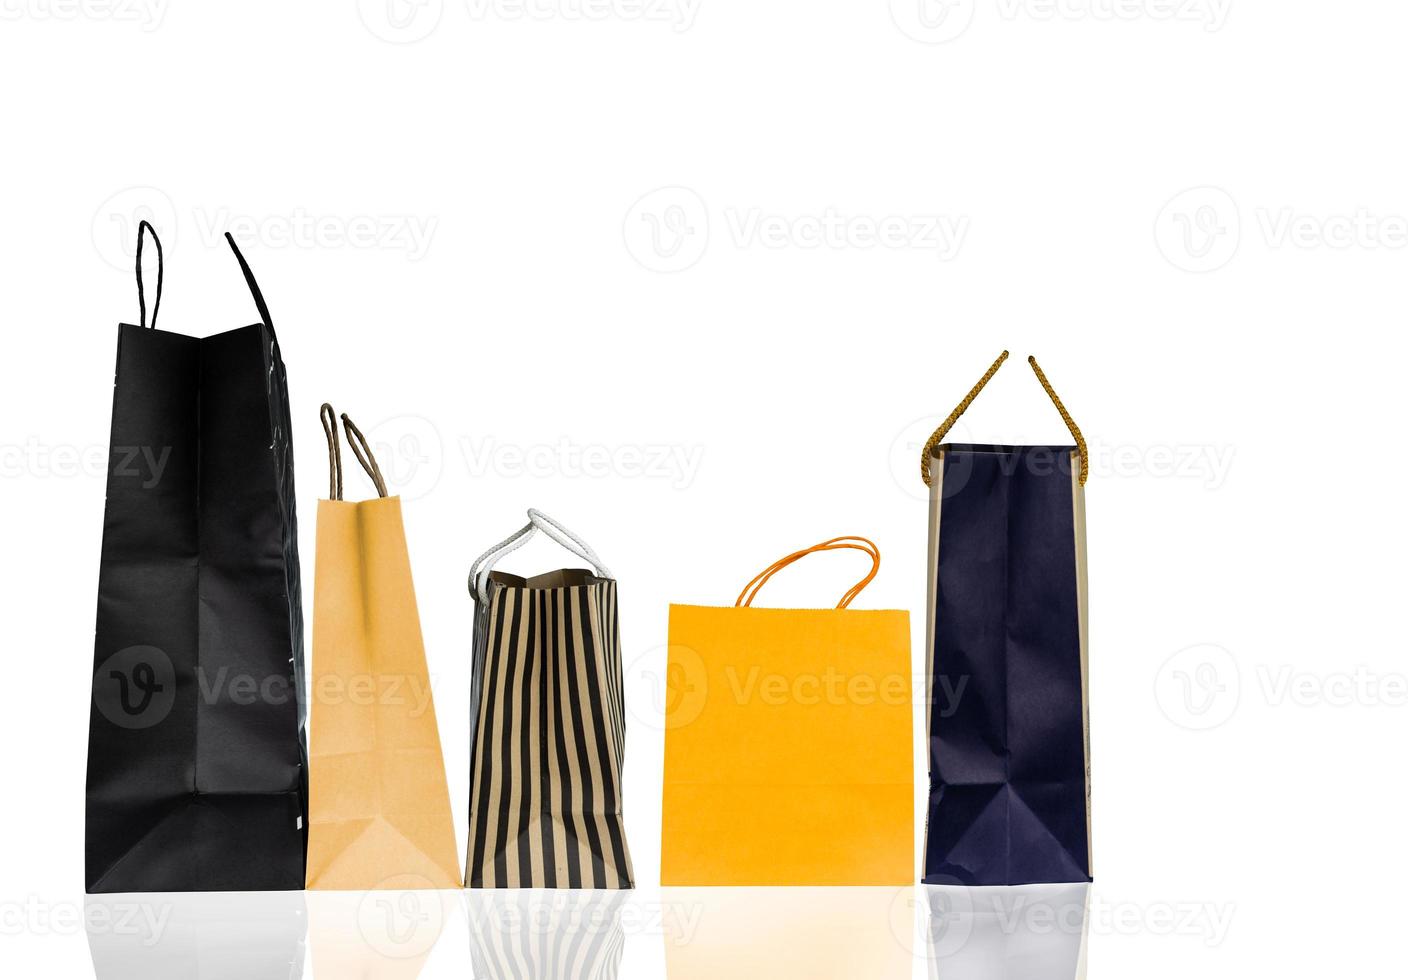 cinco sacolas de papel isoladas no fundo branco. saco de compras com cor azul, marrom e amarelo. conceito de vendas com desconto. embalagem de presente. conceito de consumismo. saco de presente de natal ou ano novo. foto